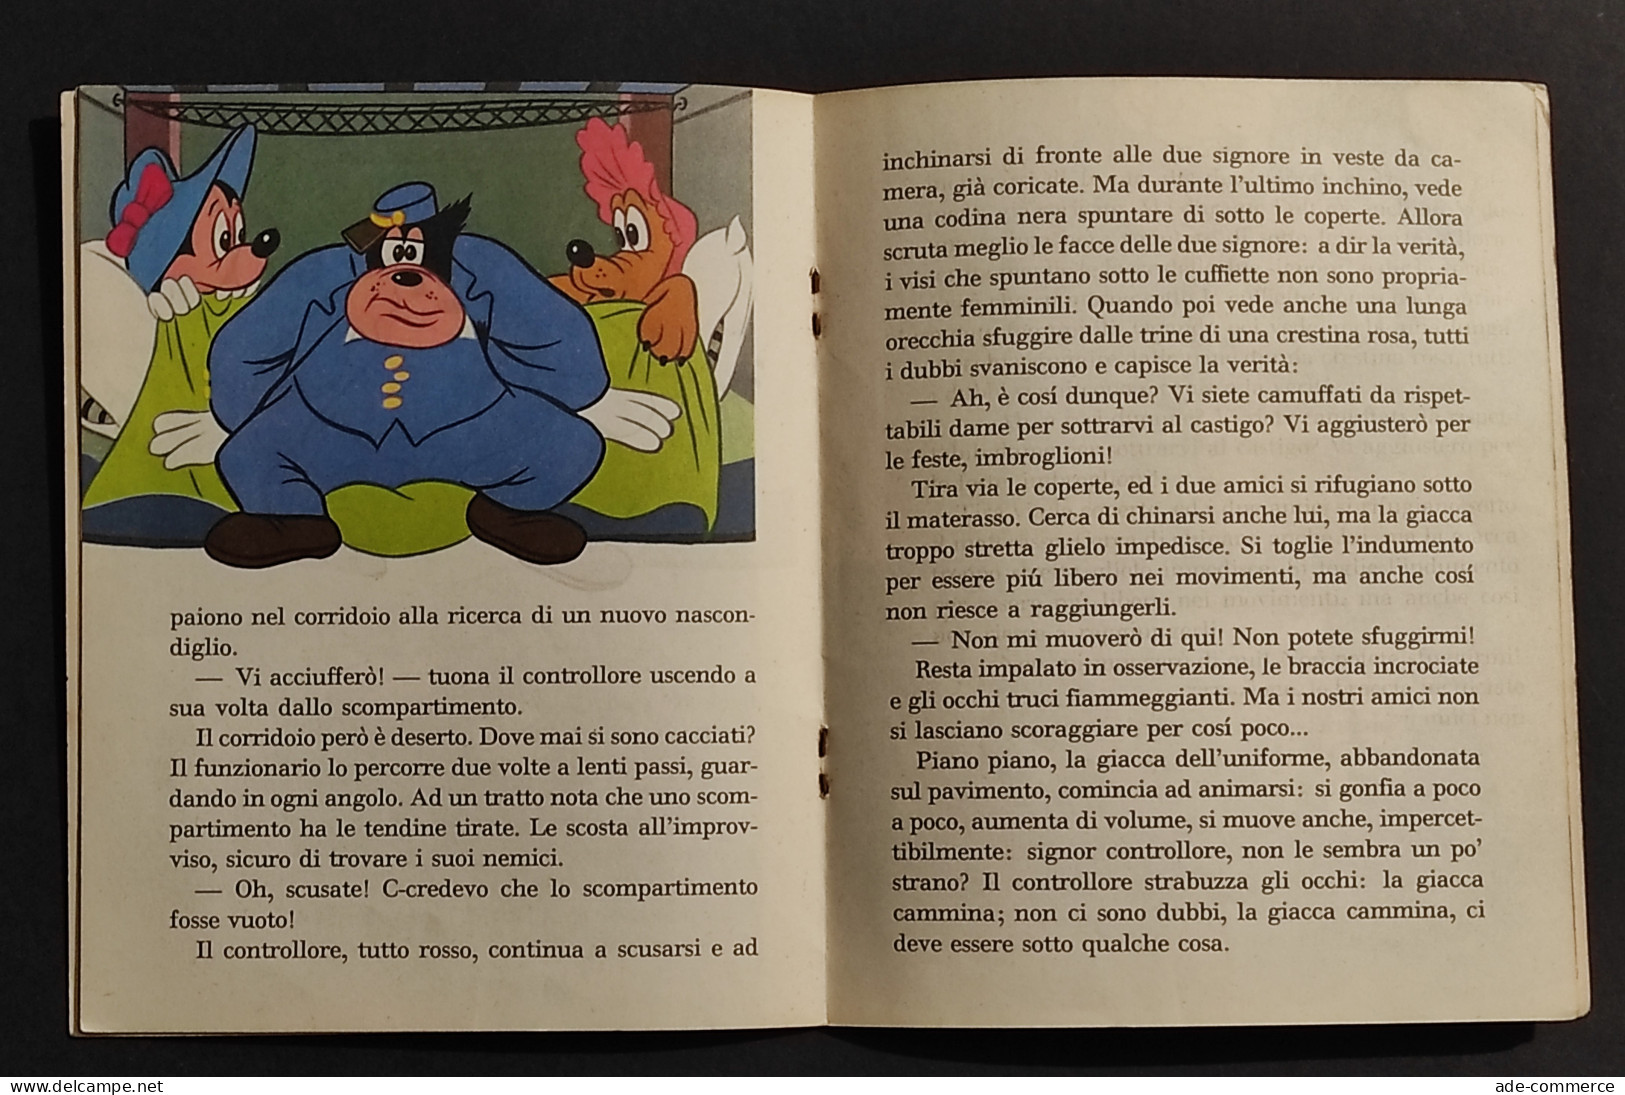 Un Viaggio Movimentato - Walt Disney - Ed. Mondadori - 1967 I Ed. - Kinder